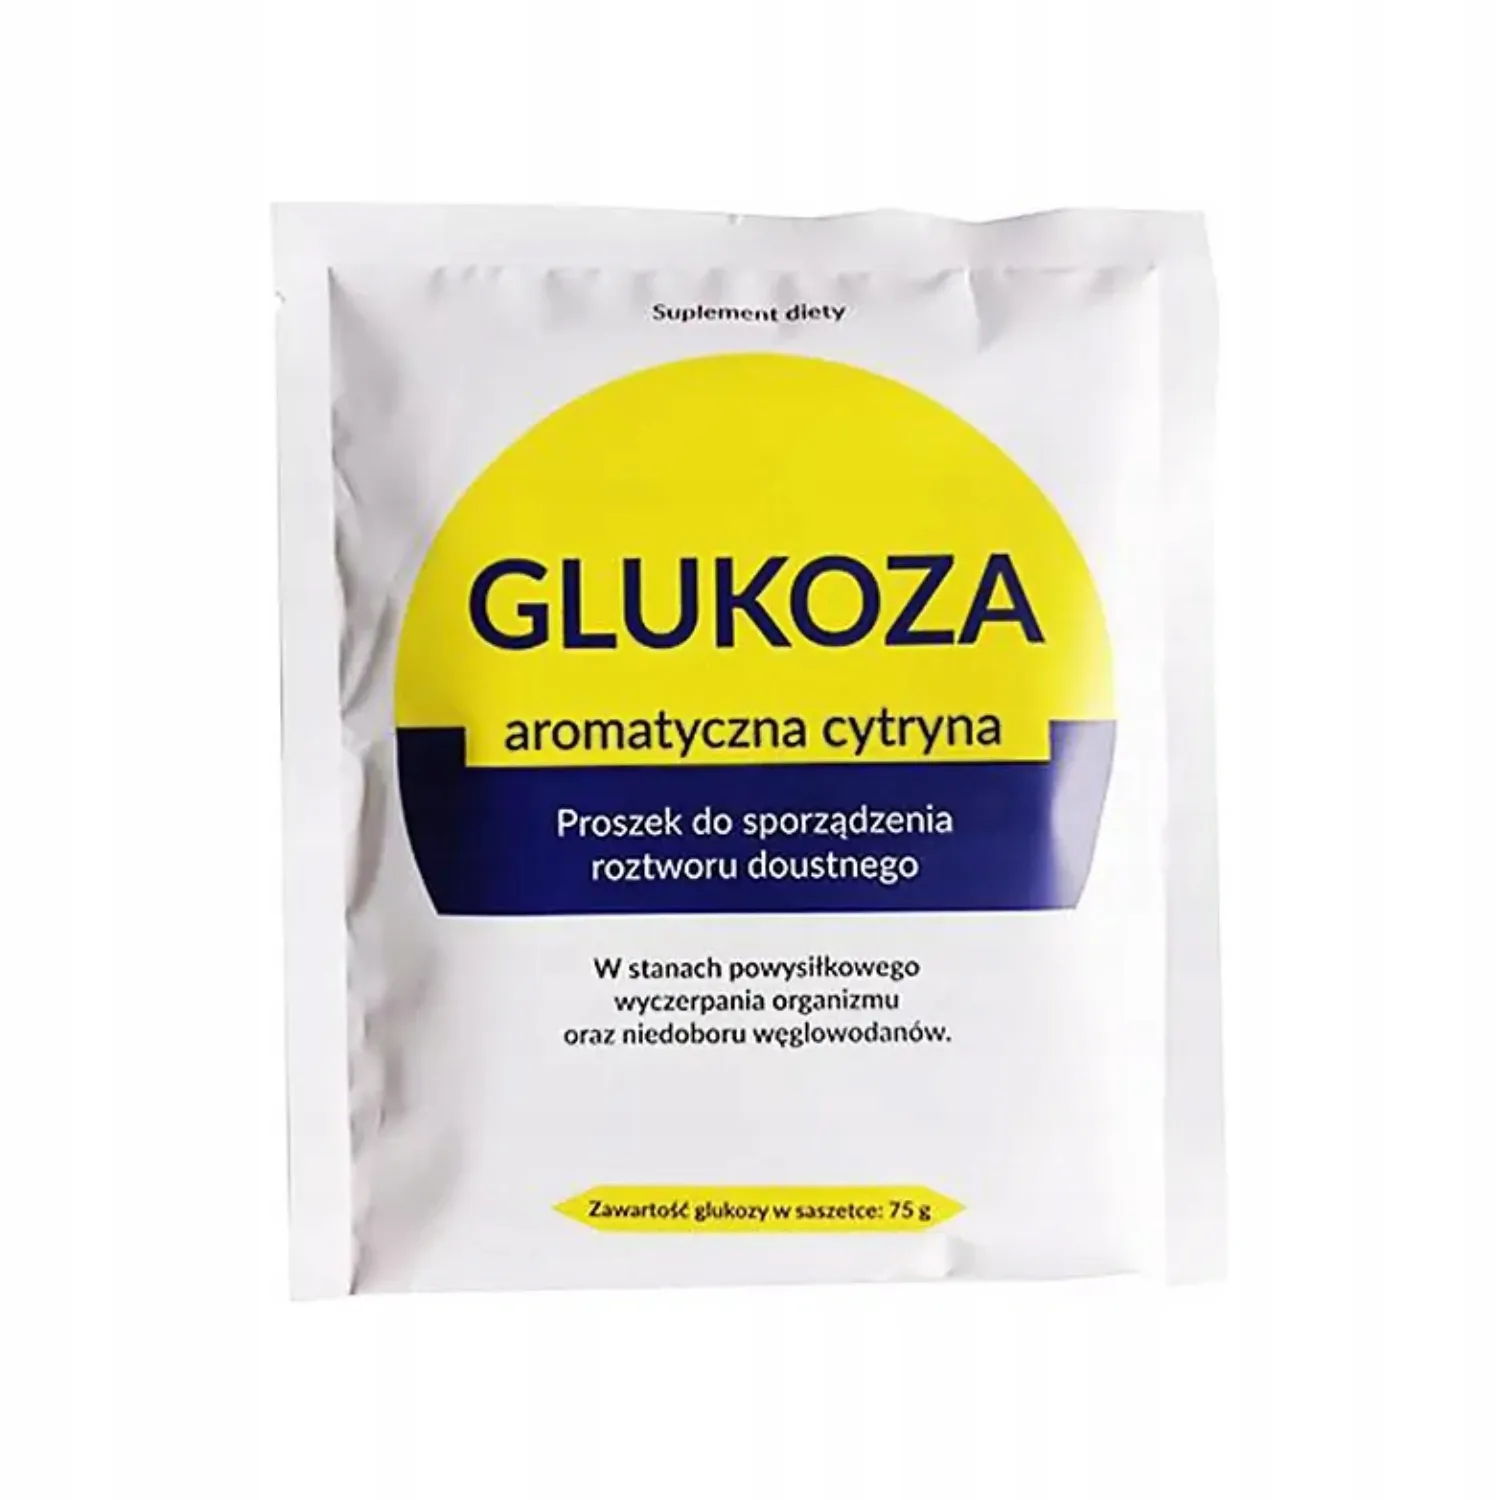 Organic Pharma glukoza aromatyczna cytryna, 75 g